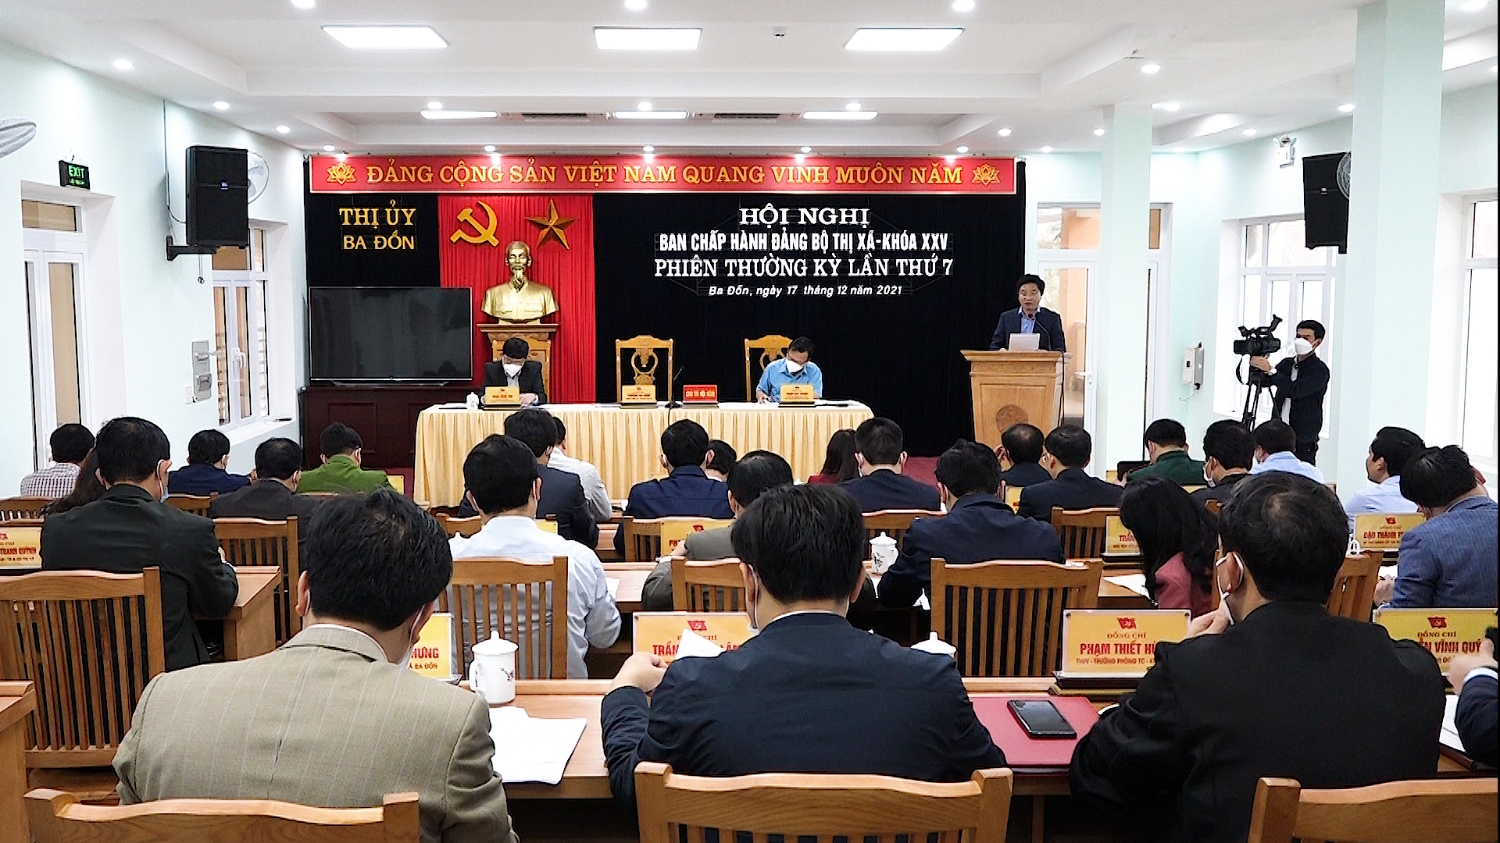 Toàn cảnh Hội nghị Ban Chấp hành Đảng bộ thị xã Ba Đồn khóa XXV, phiên họp lần thứ 7